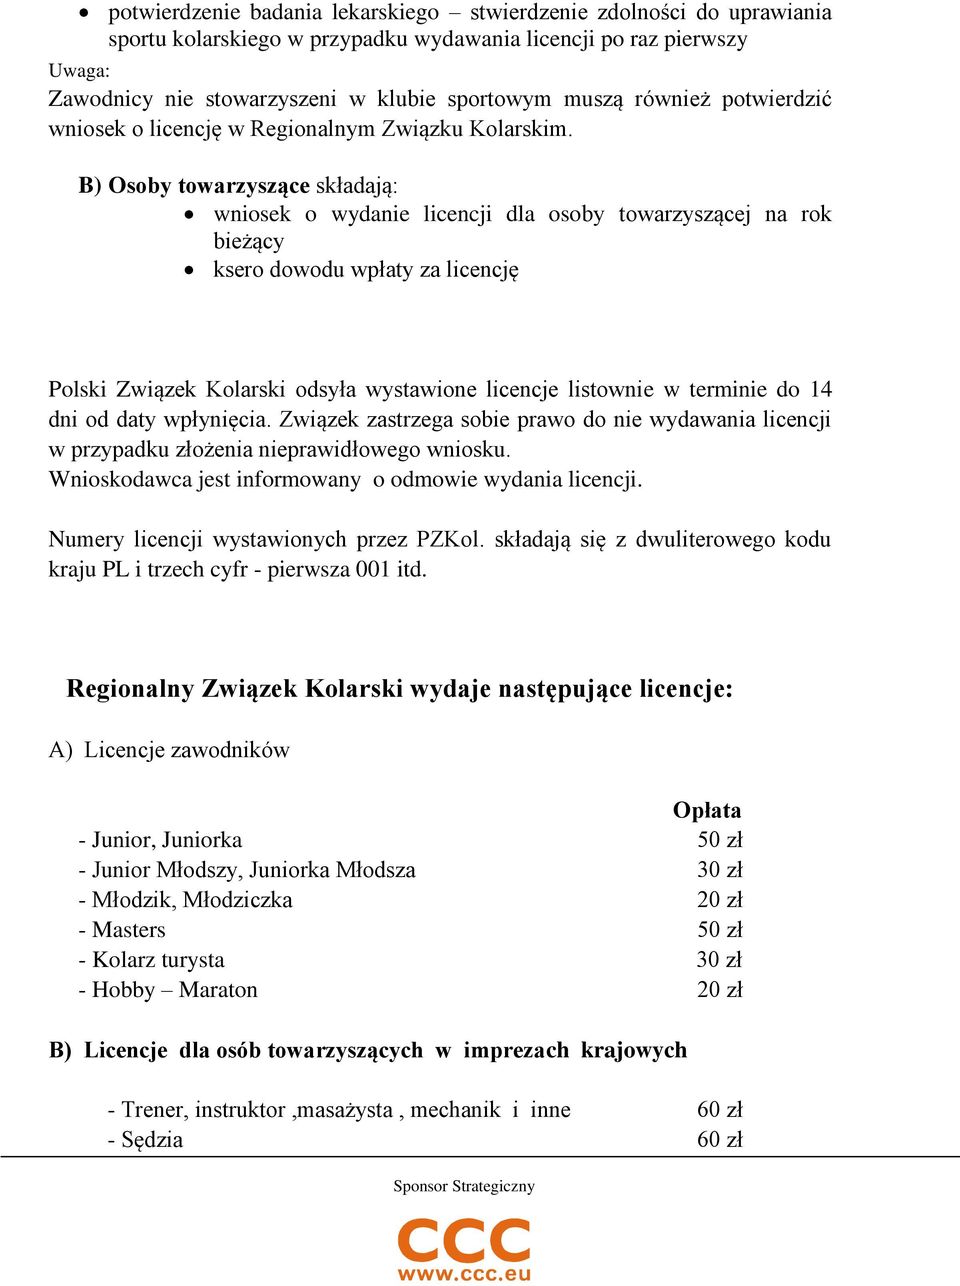 B) Osoby towarzyszące składają: wniosek o wydanie licencji dla osoby towarzyszącej na rok bieżący Polski Związek Kolarski odsyła wystawione licencje listownie w terminie do 14 dni od daty wpłynięcia.